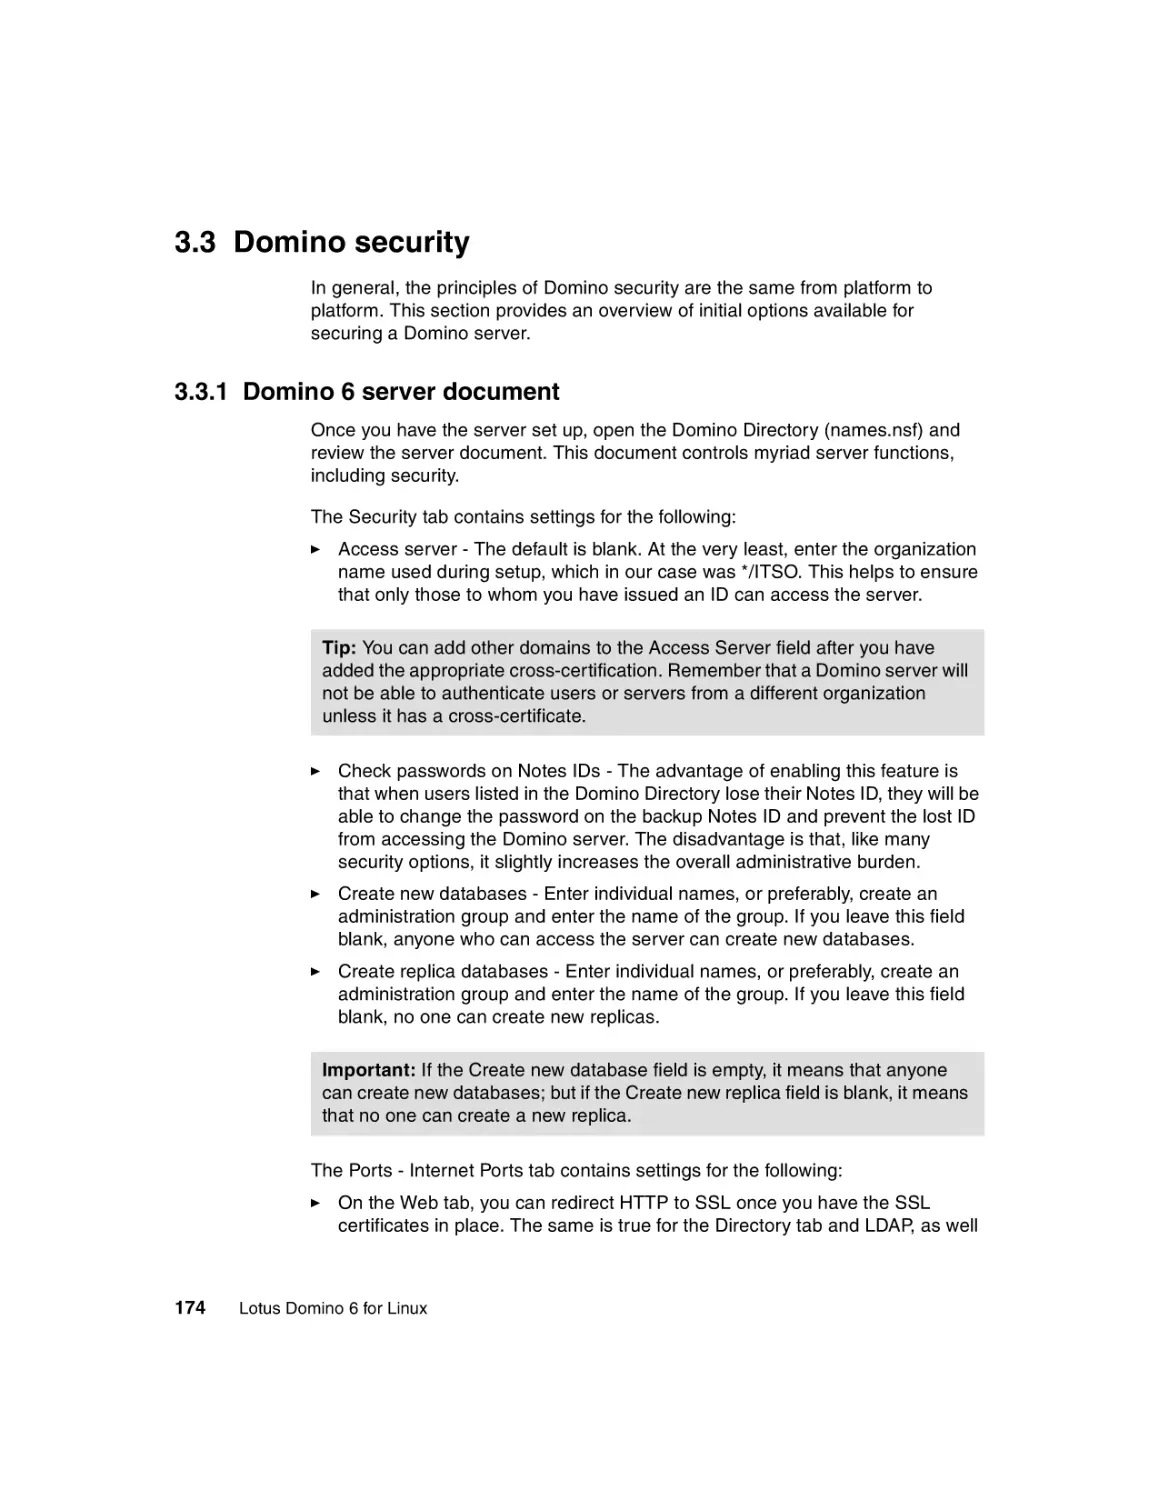 3.3 Domino security
3.3.1 Domino 6 server document